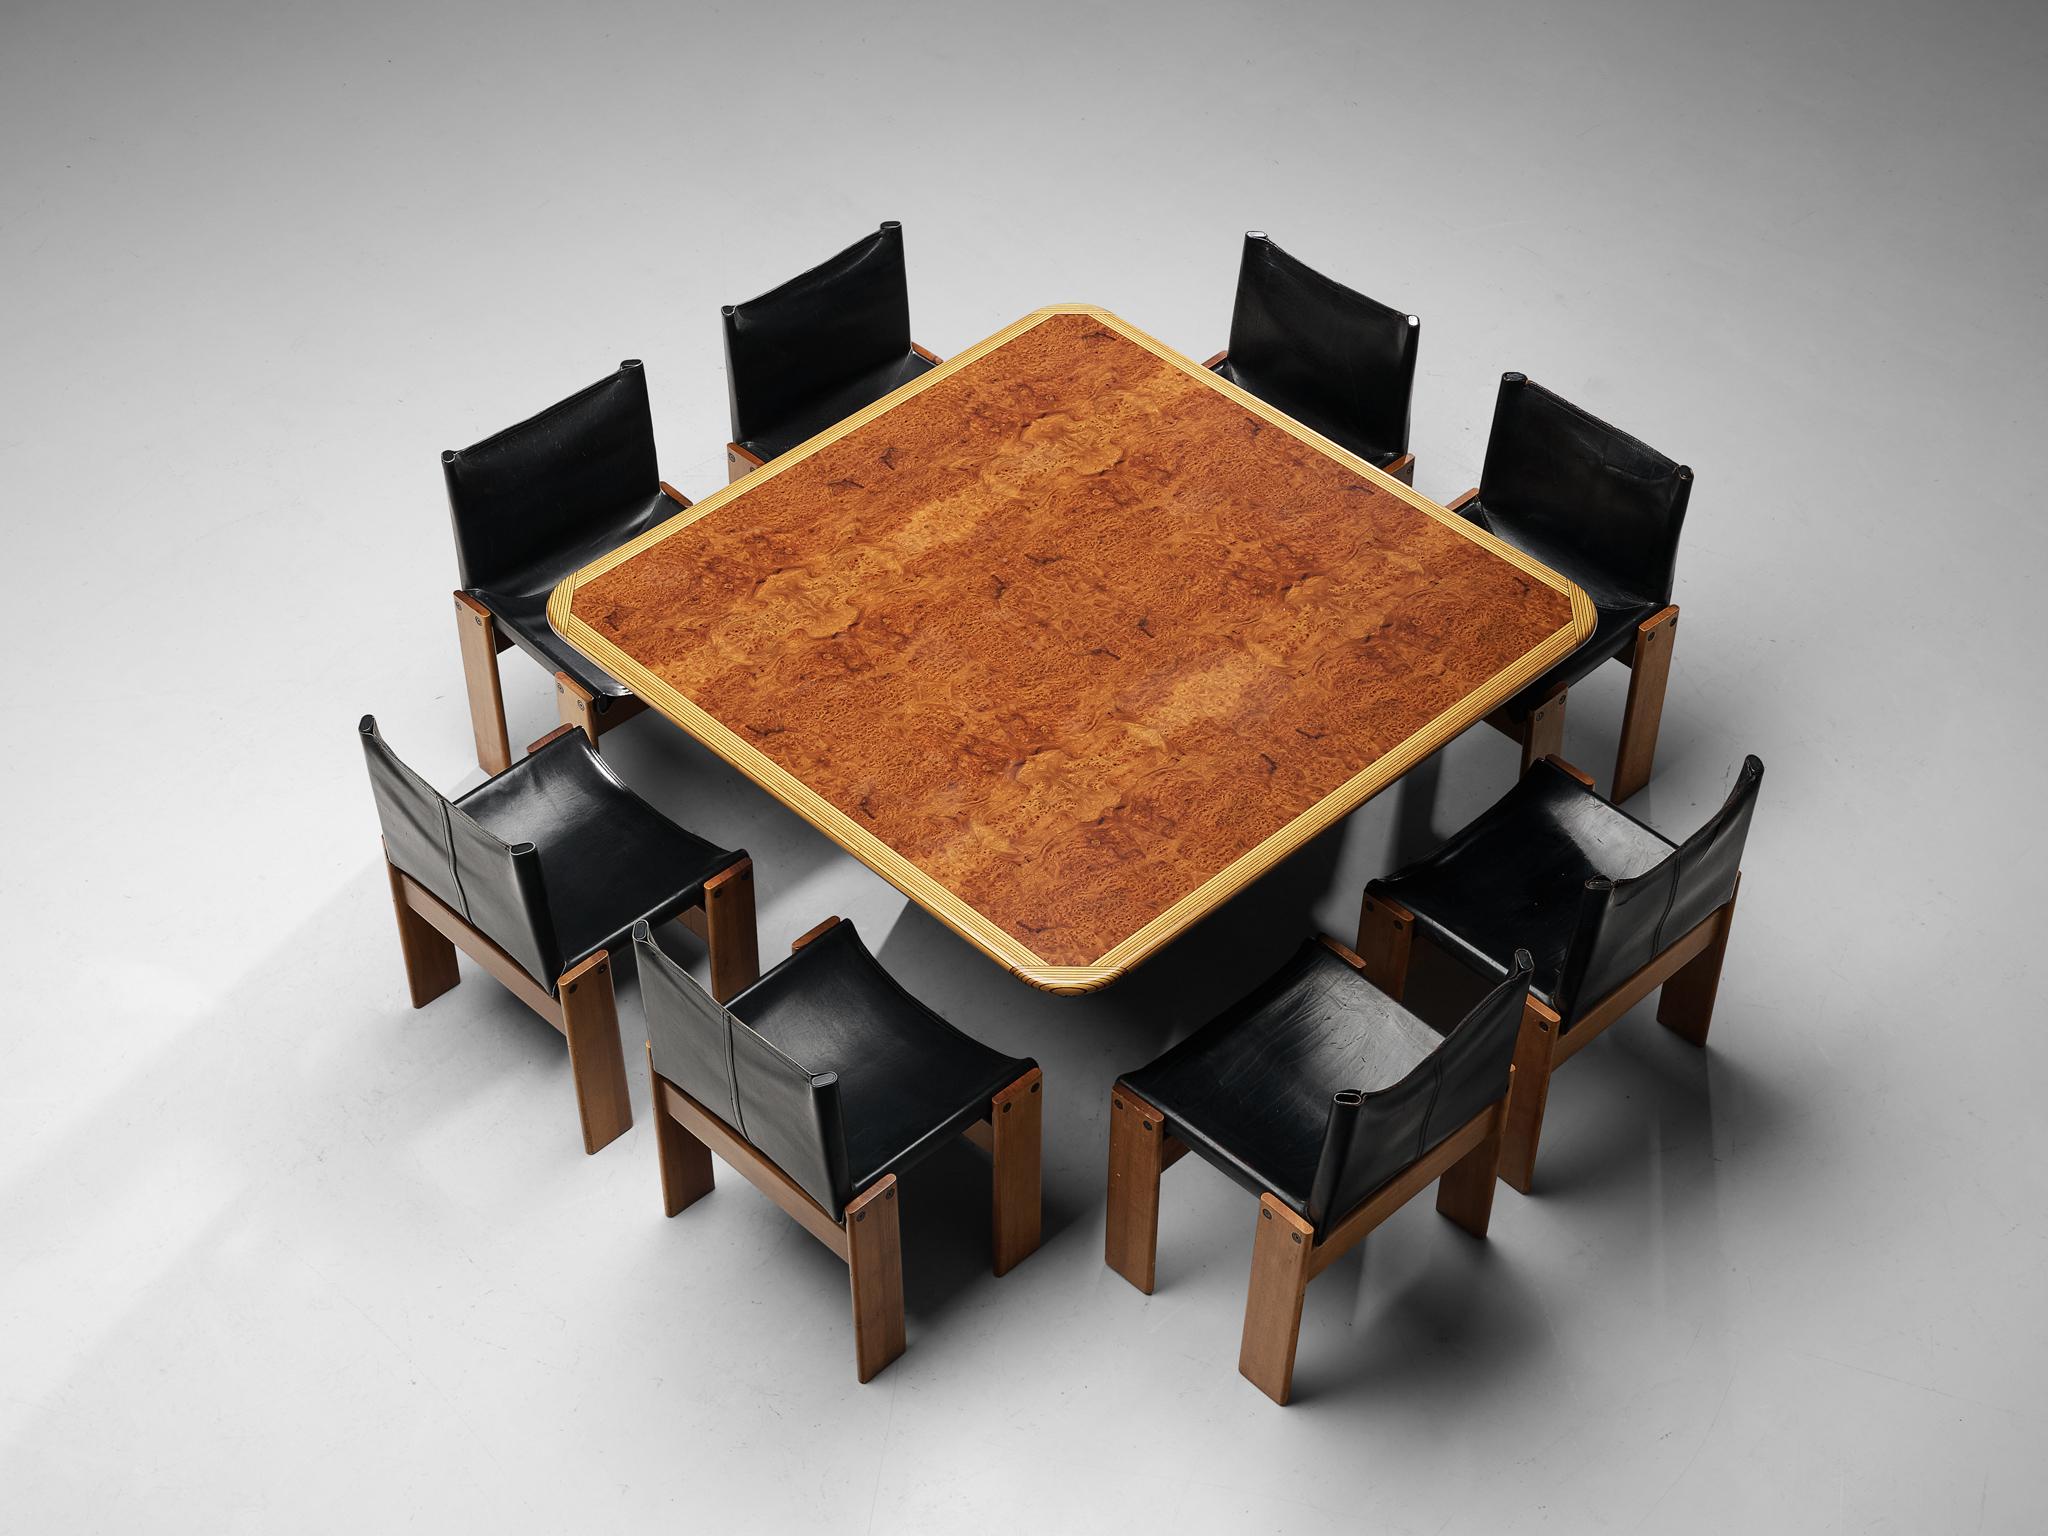 Afra & Tobia Scarpa for Maxalto, square dining table model ‘Artona’, mahogany, mahogany burl, Italy, 1975.

The table was designed by Afra & Tobia Scarpa within the ‘Artona’ line for Maxalto. On a squared pedestal base rests a square tabletop. The